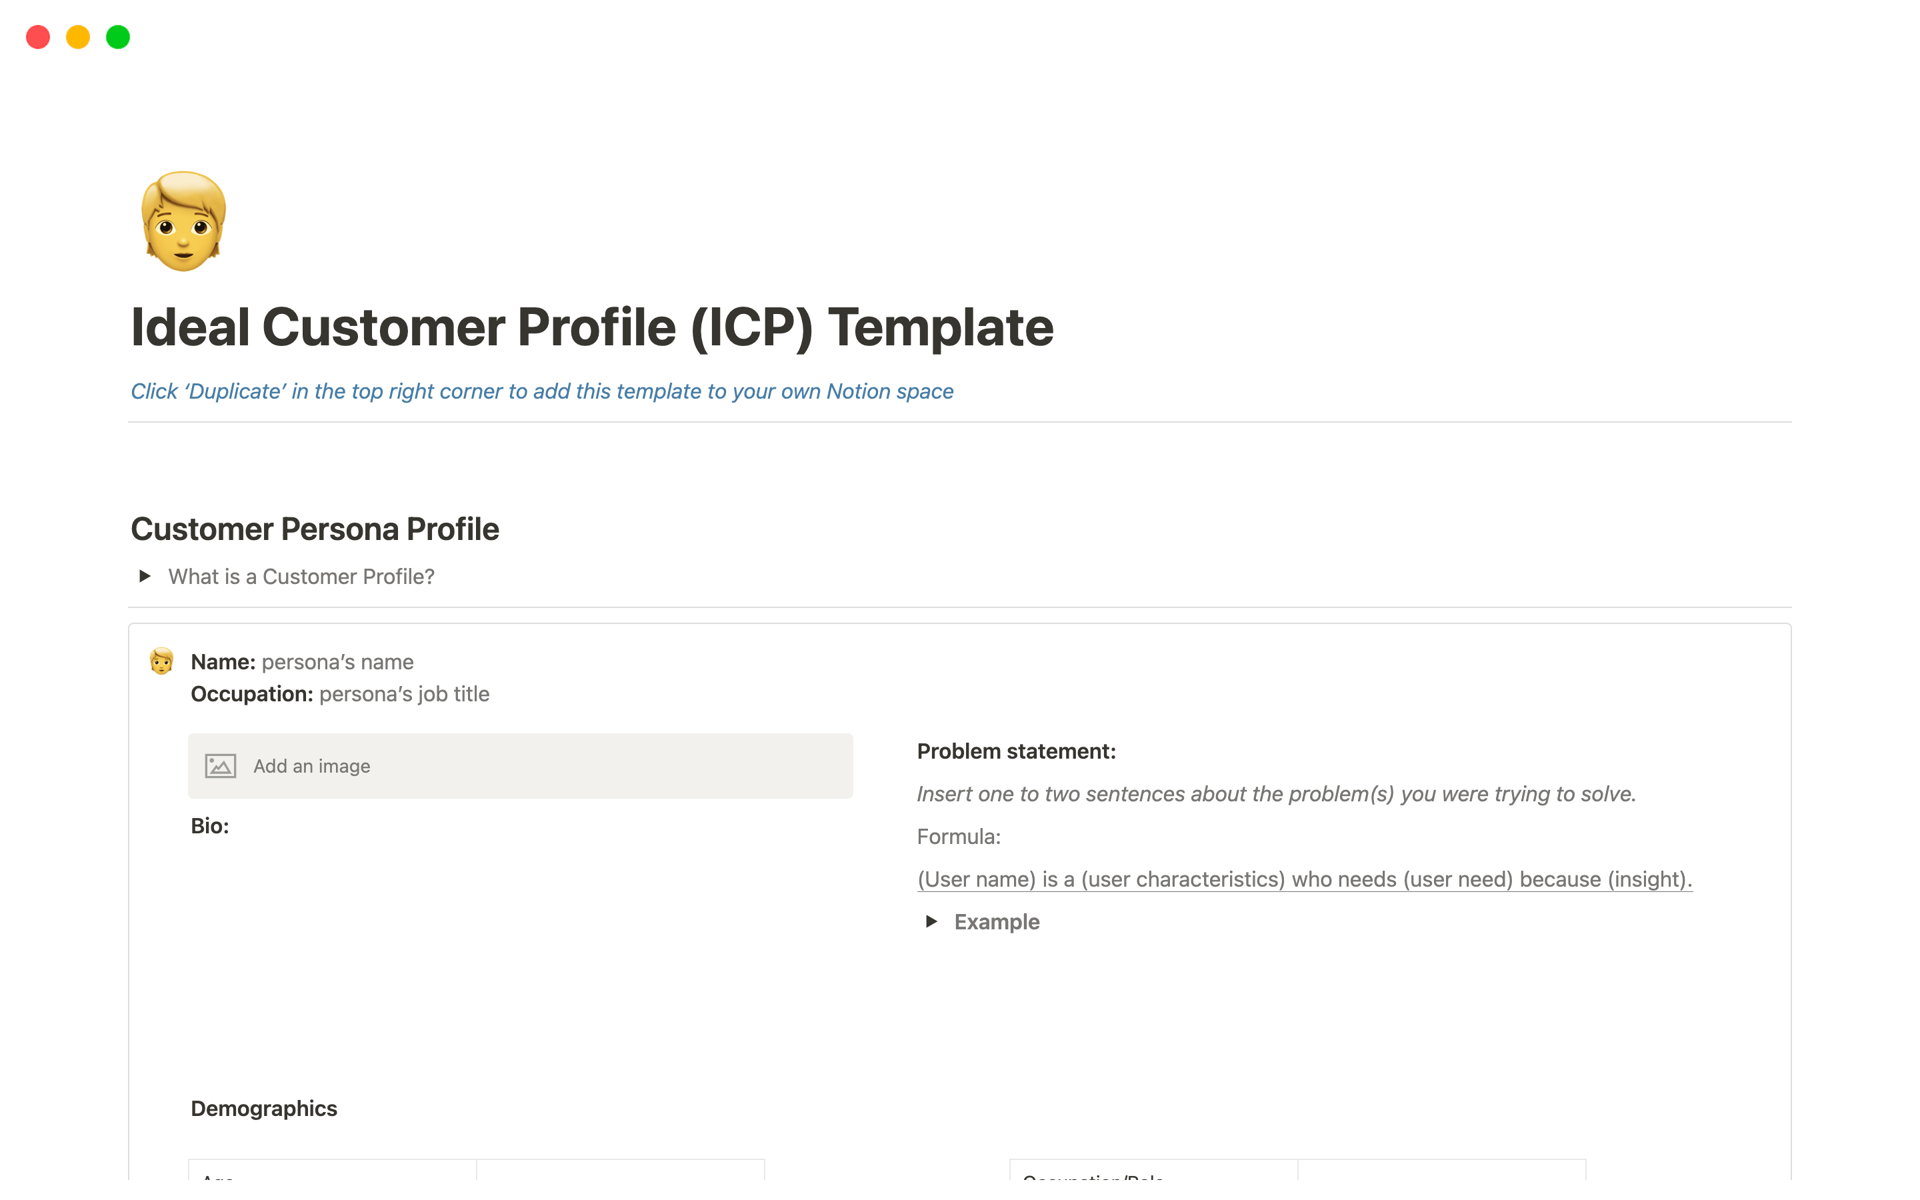 Vista previa de una plantilla para Ideal Customer Profile (ICP)